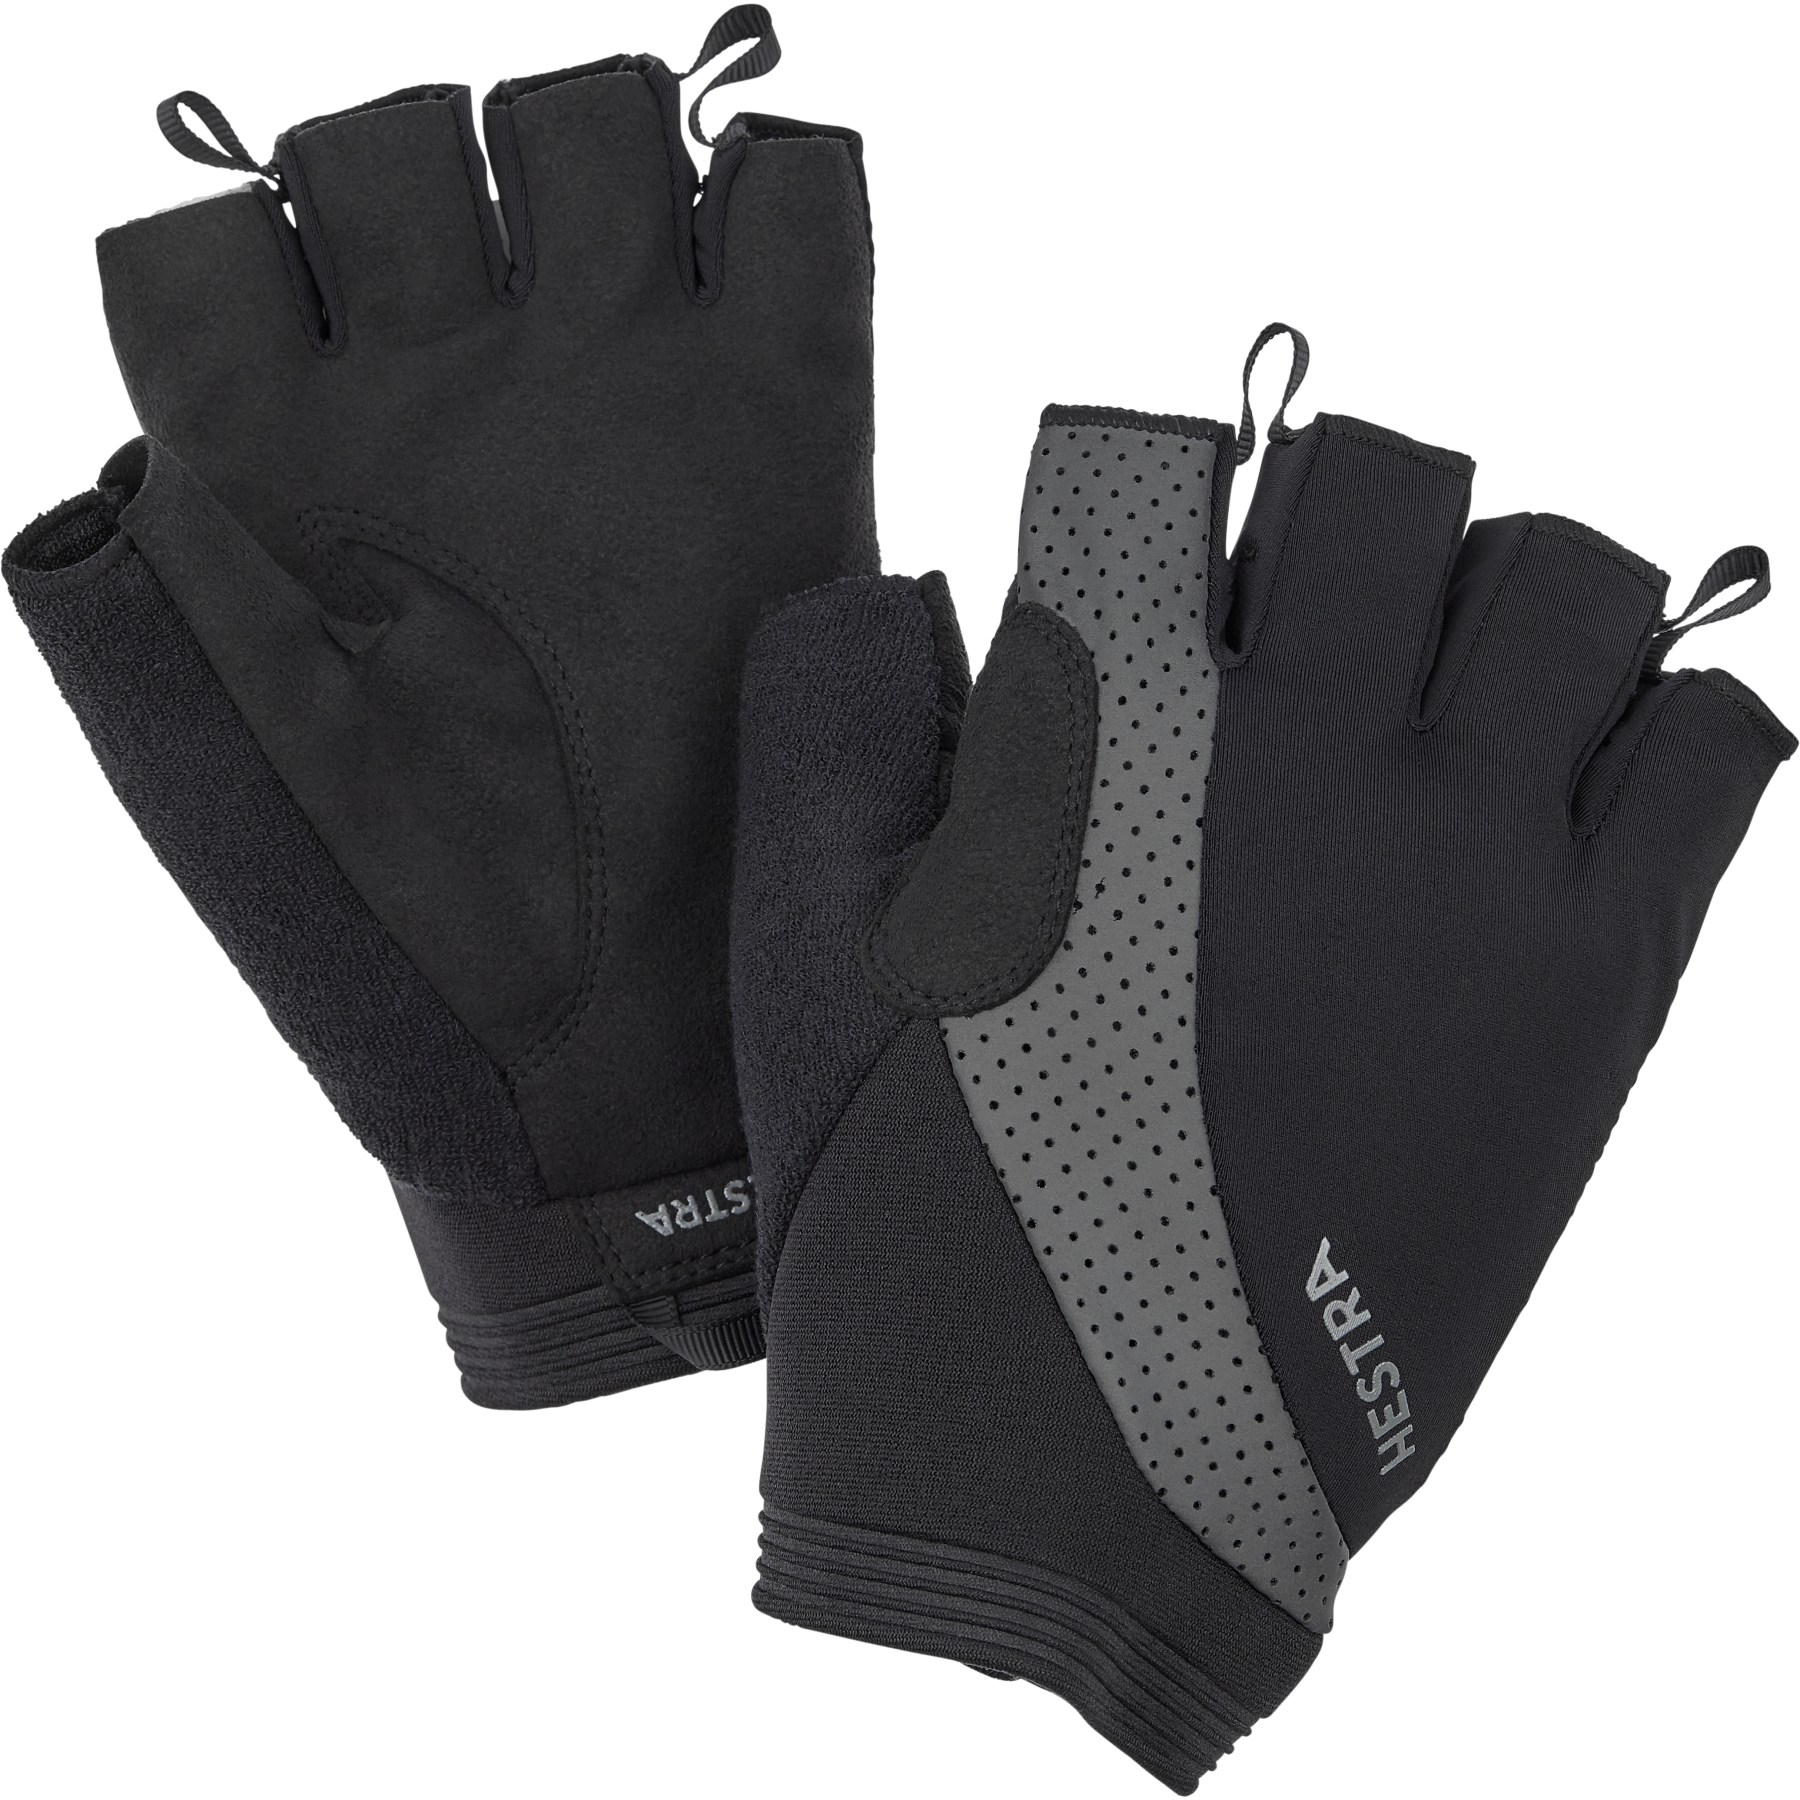 Picture of Hestra Apex Reflective Short - 5 Finger Bike Gloves - black